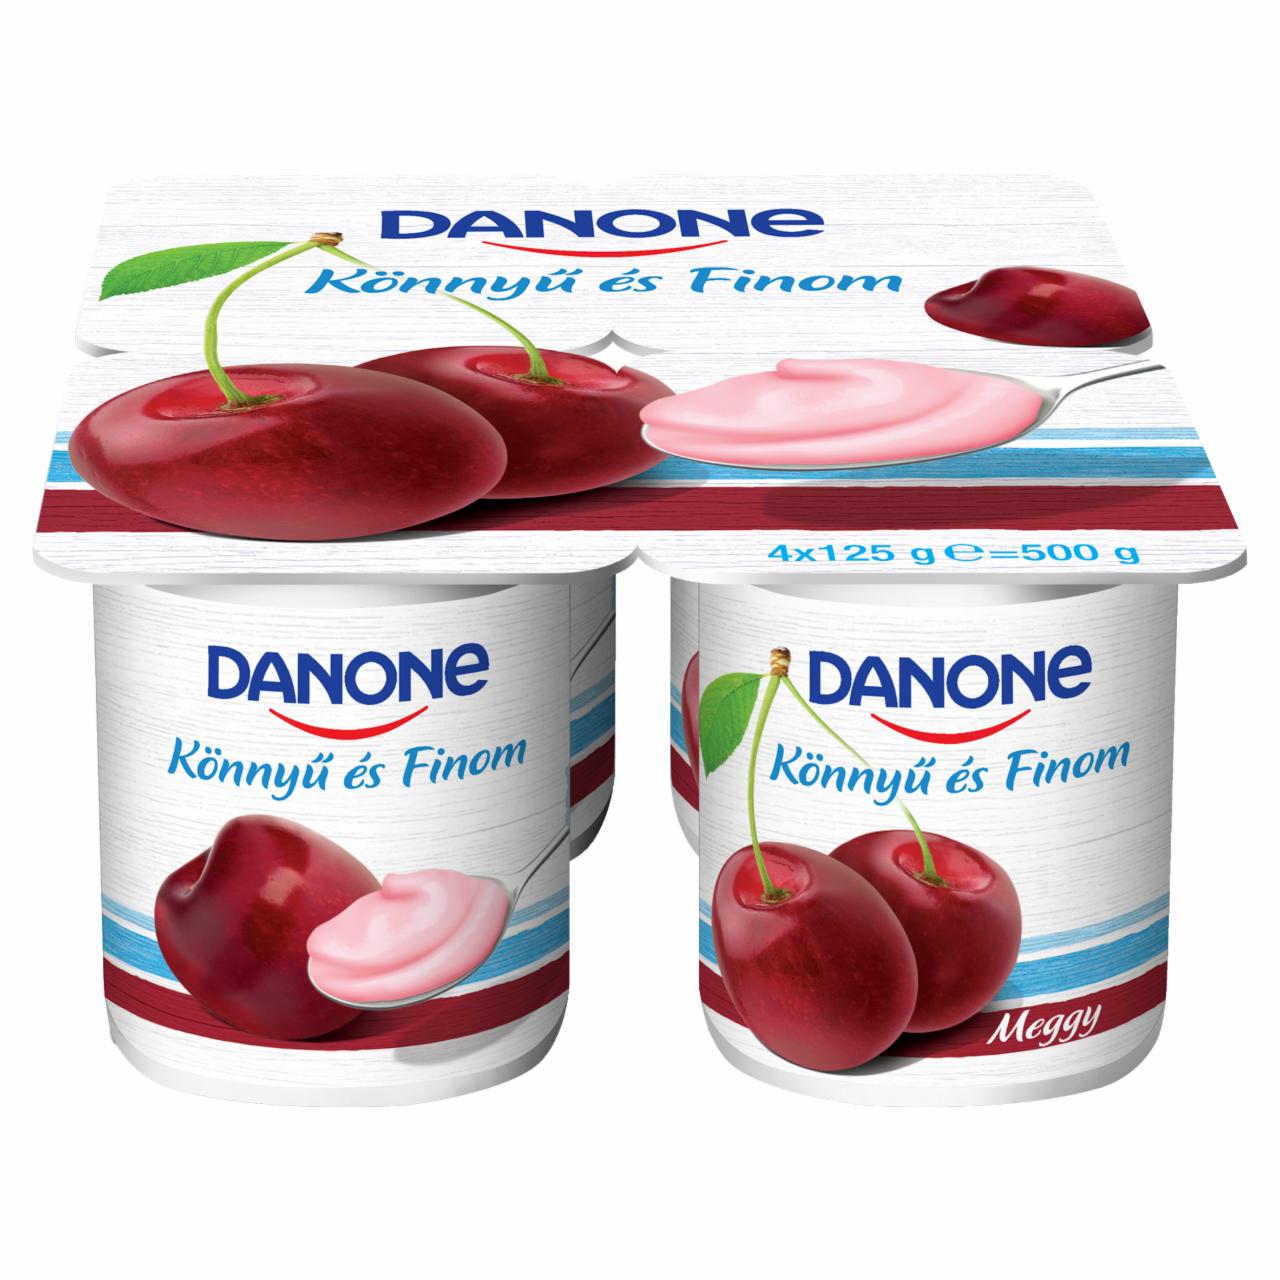 Képek - Danone meggyízű, élőflórás, zsírszegény joghurt 4 x 125 g